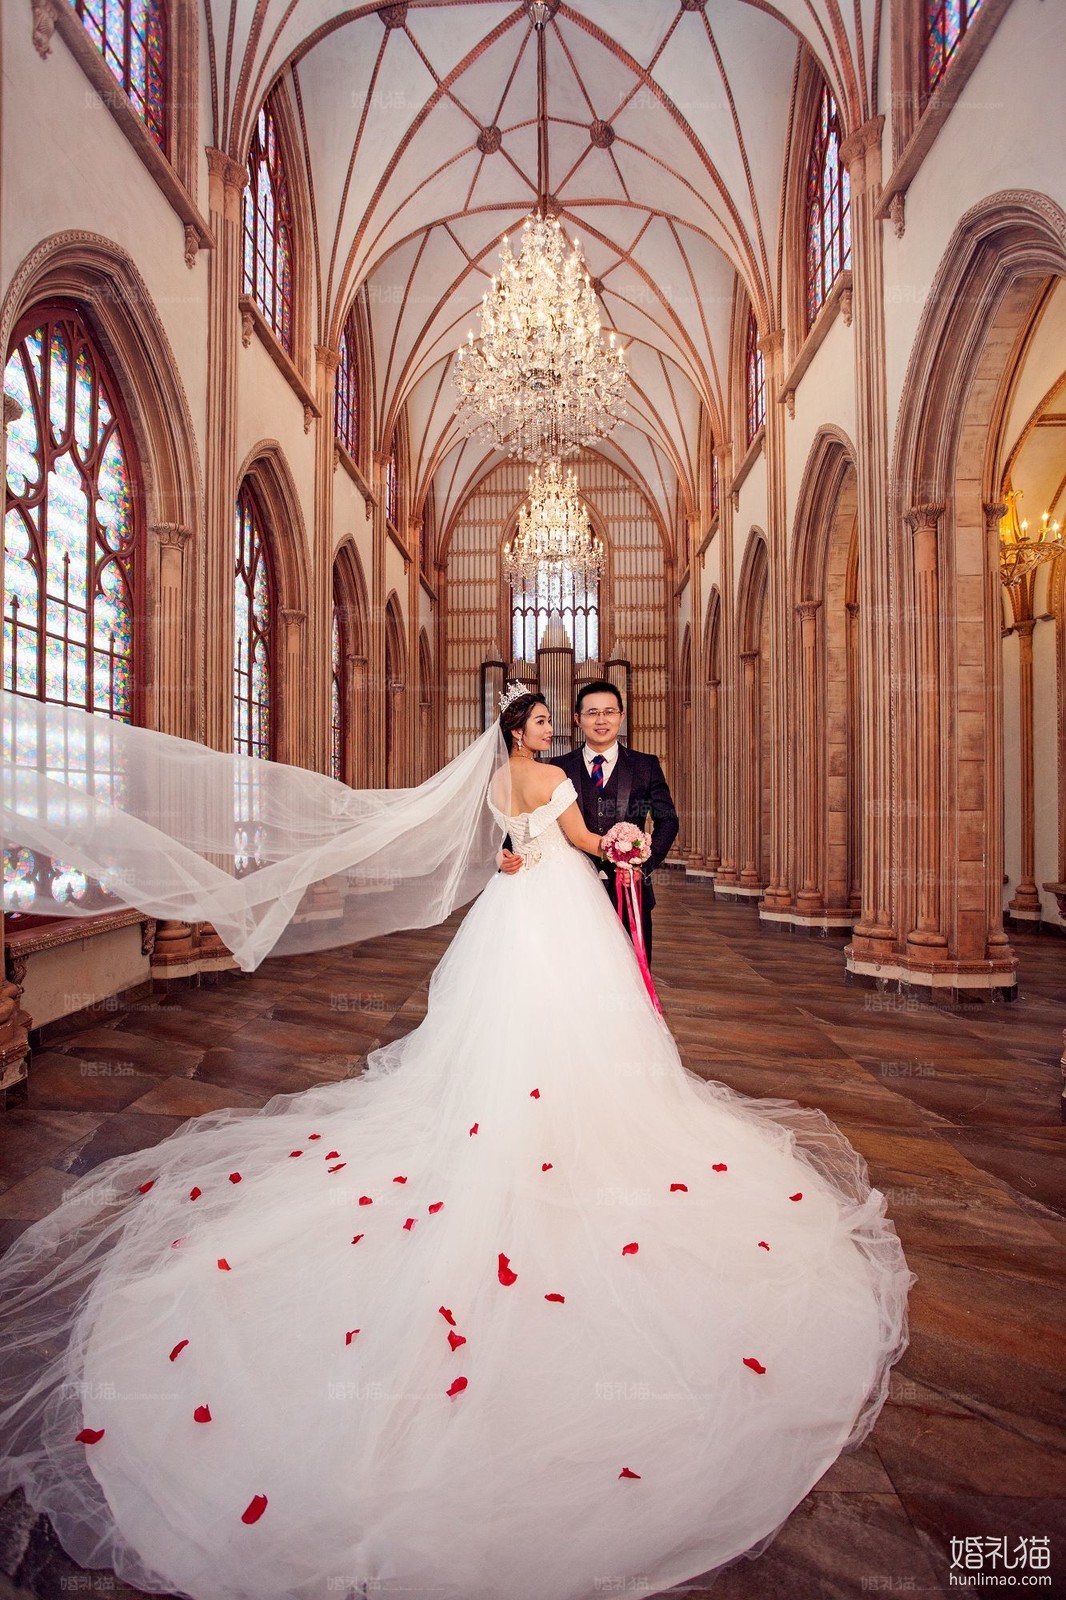 欧式结婚照|城堡婚纱照图片,[欧式, 城堡],广州婚纱照,婚纱照图片